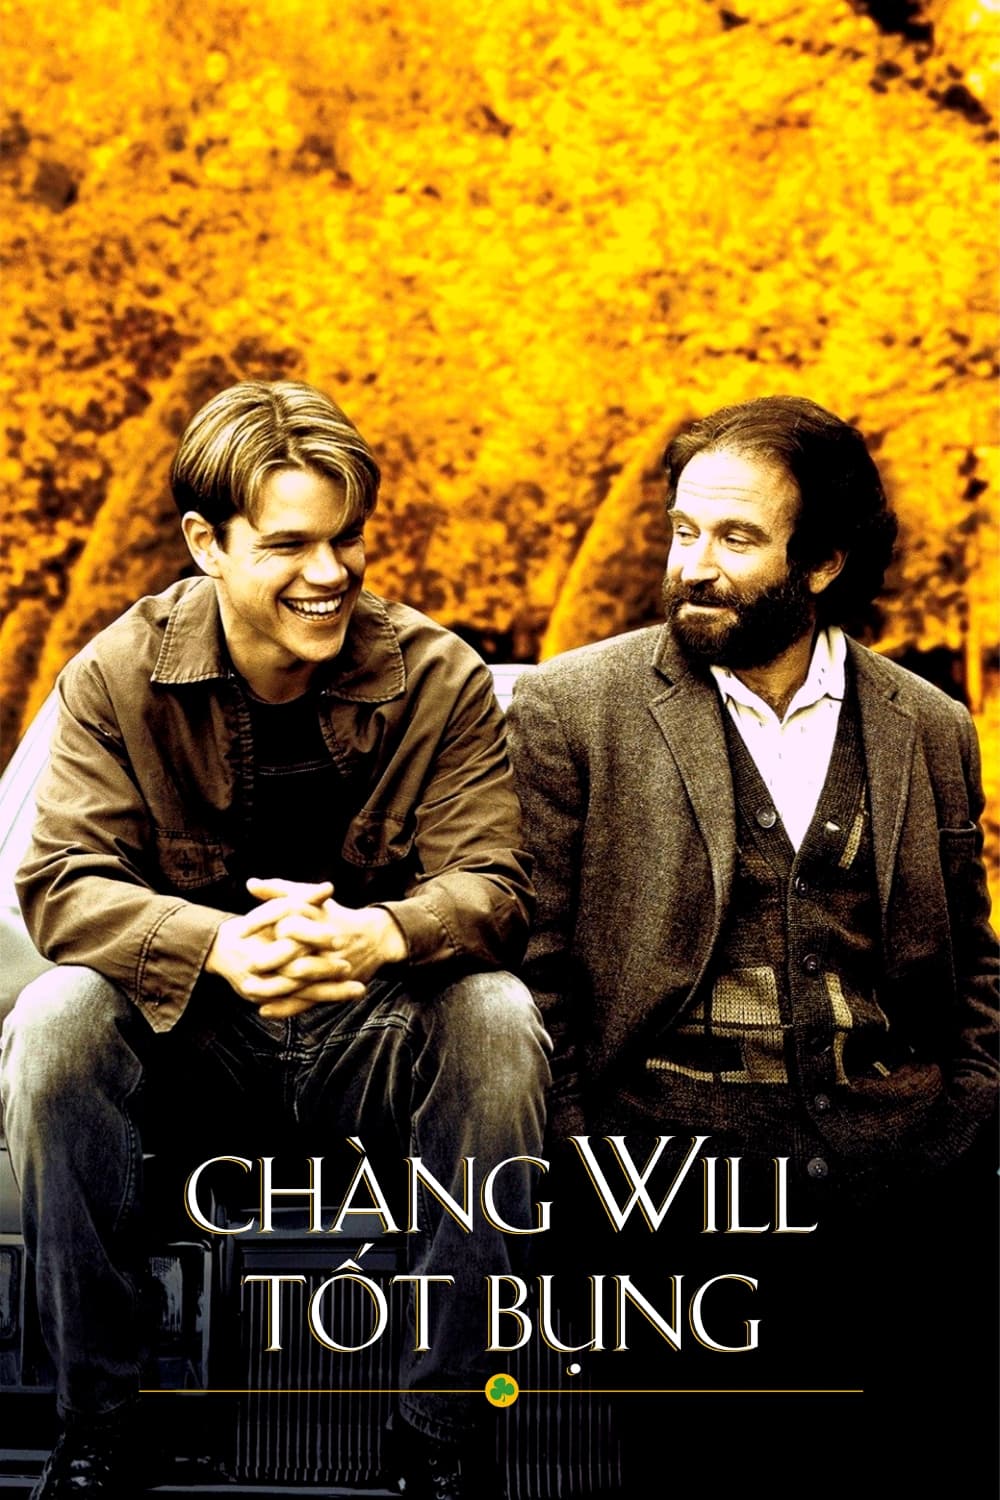 Chàng Will Tốt Bụng (Good Will Hunting) [1997]